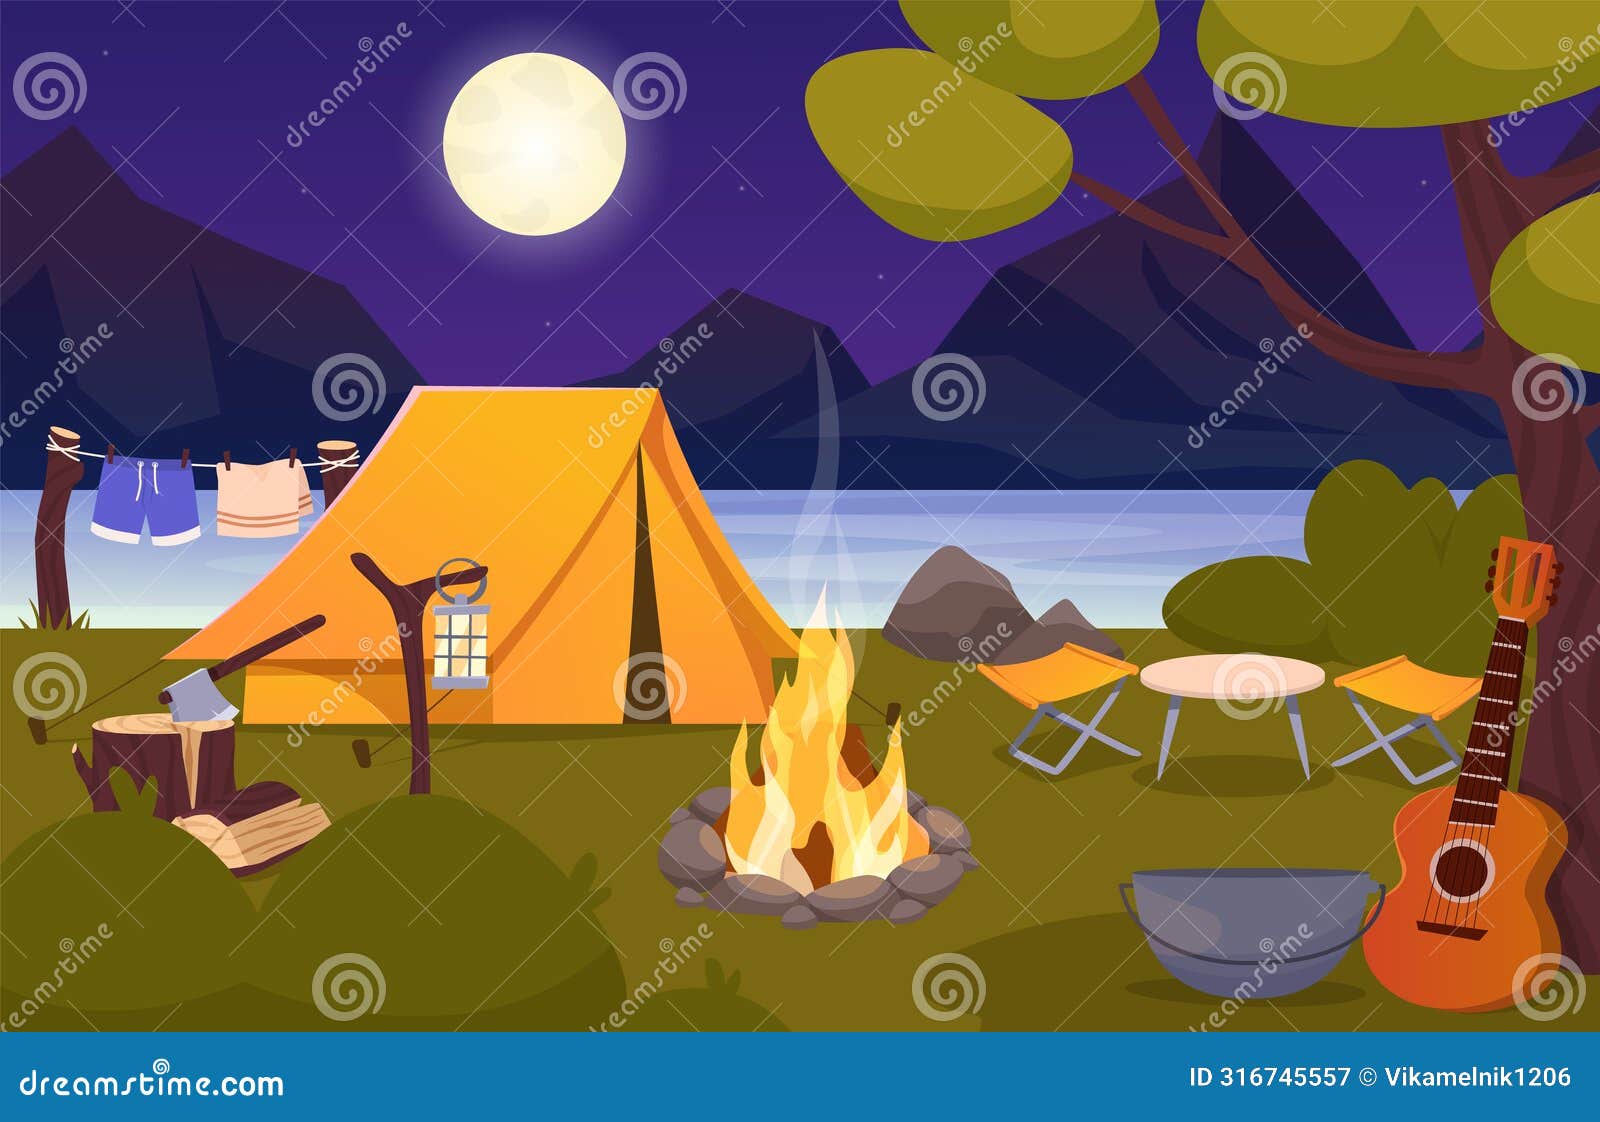 Nature camp landscape stock illustration. Illustration of bonfire ...